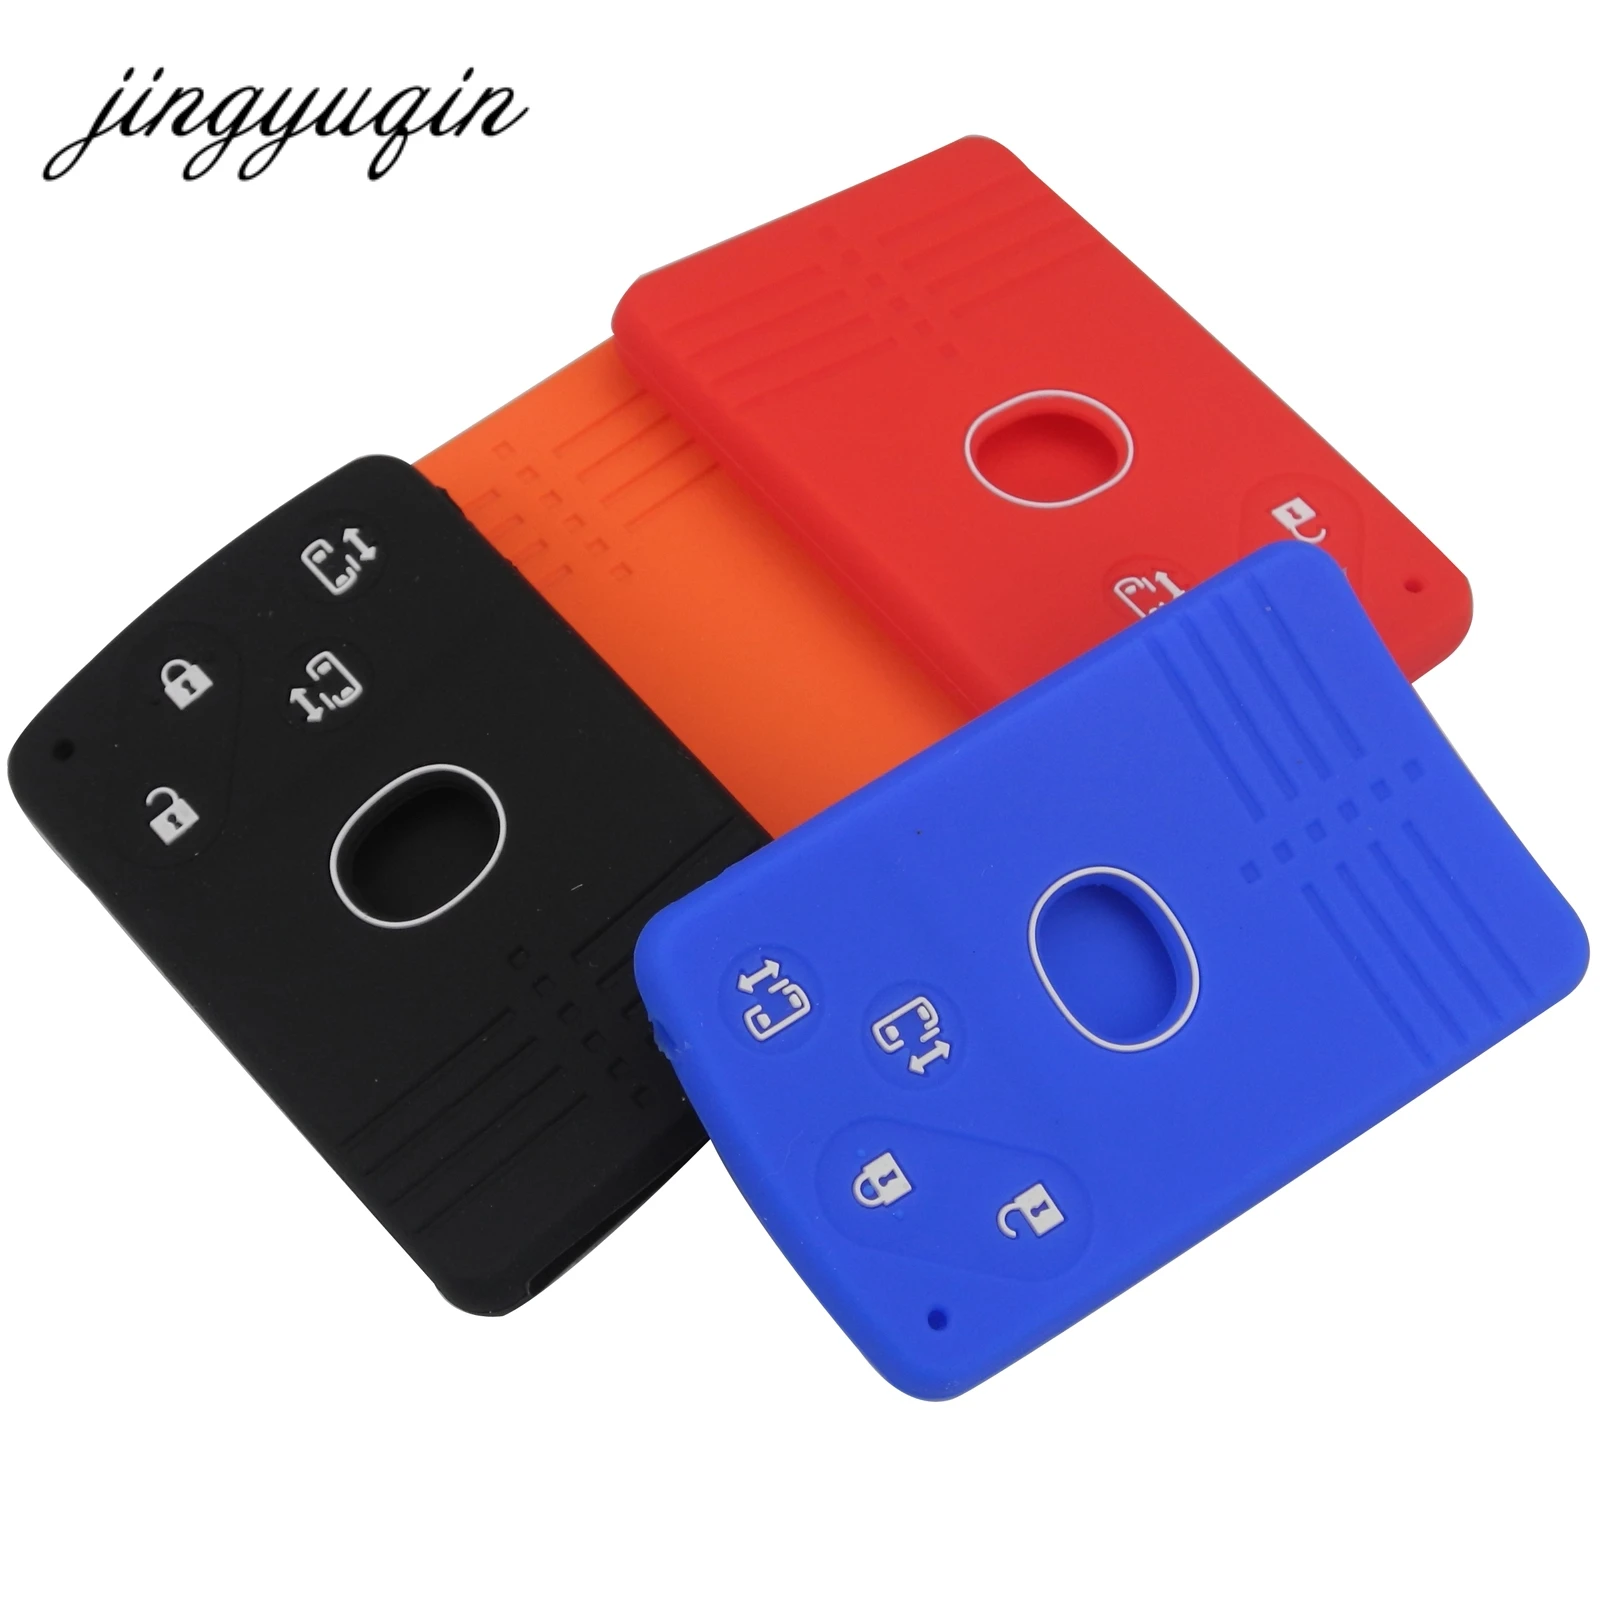 jingyuqin 10pcs/lot Silicone Rubber Car Key Fob Cover for Mazda 5 6 8 M8 CX-7 CX-9 Smart Card Remote Key 4 Button Case Skin